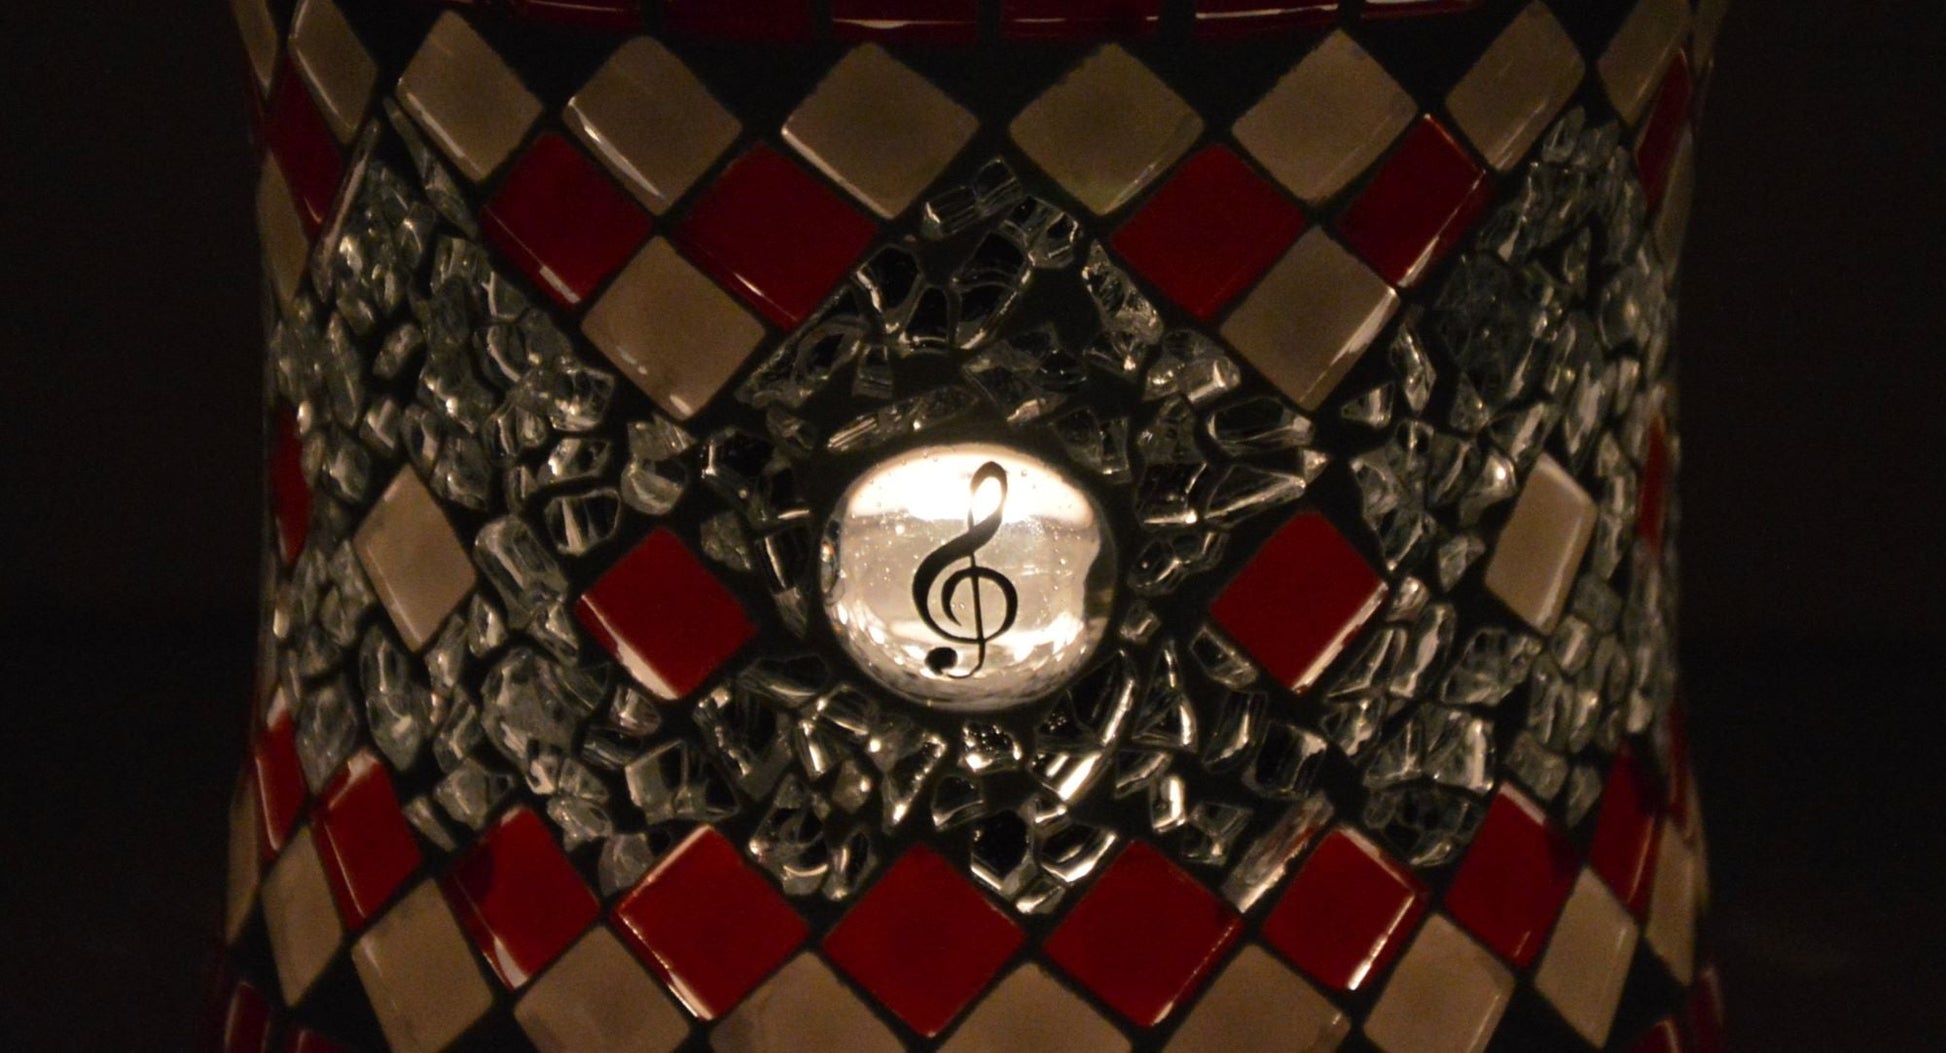 Windlicht Violinschlüssel Notenschlüssel rot weiß 10 cm hoch - Mosaikkasten aus alt mach neu dekoidee